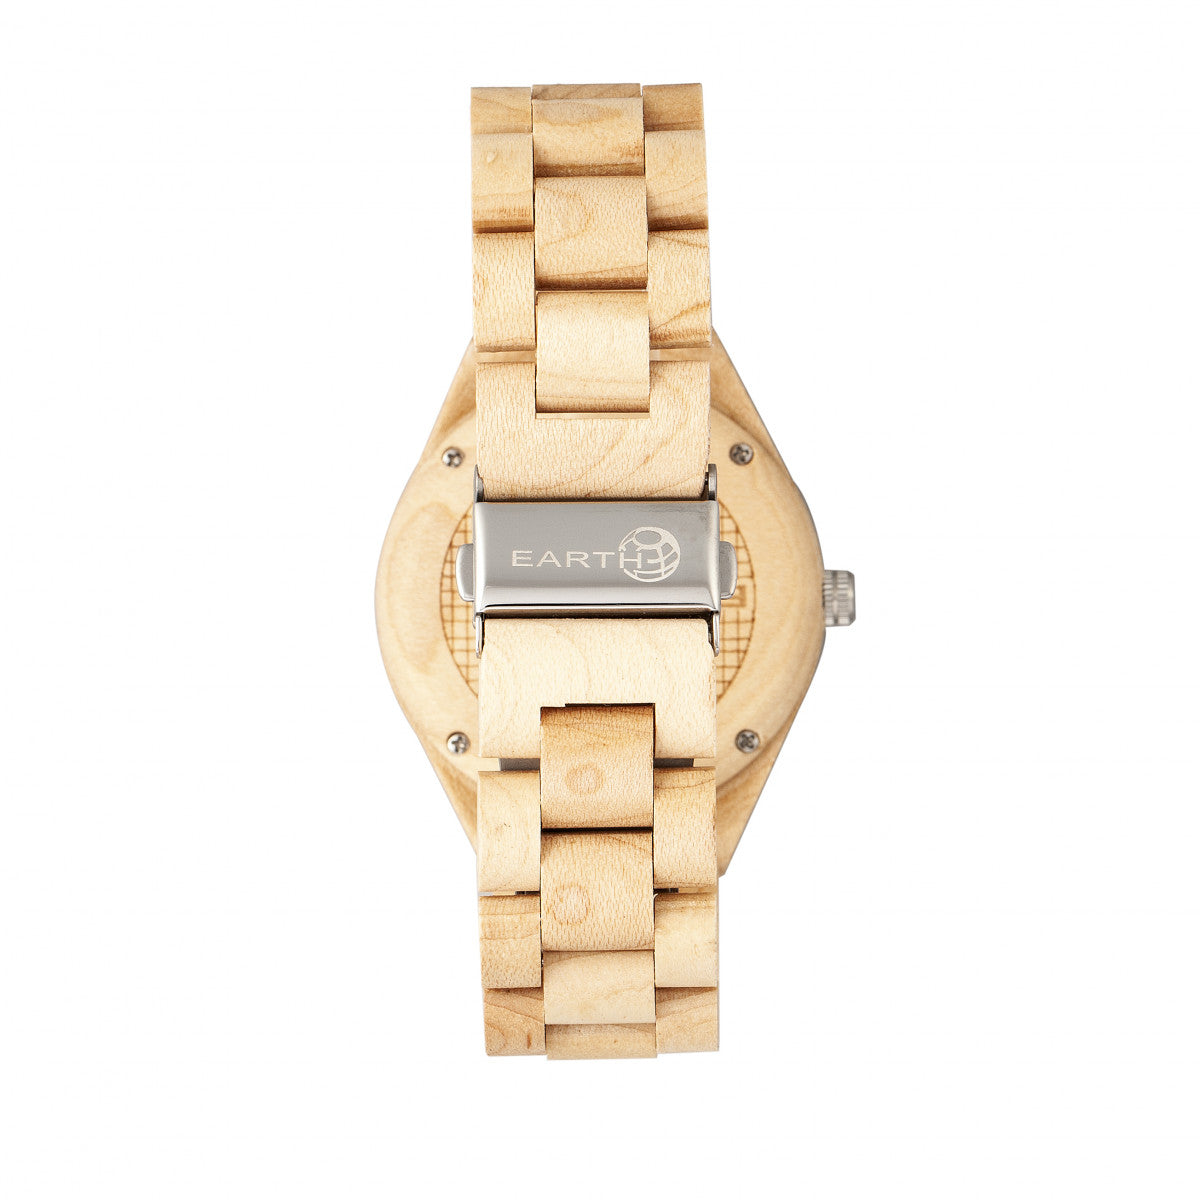 Earth Wood Sapwood Bracelet Watch w/Date - Khaki/Tan - ETHEW1601